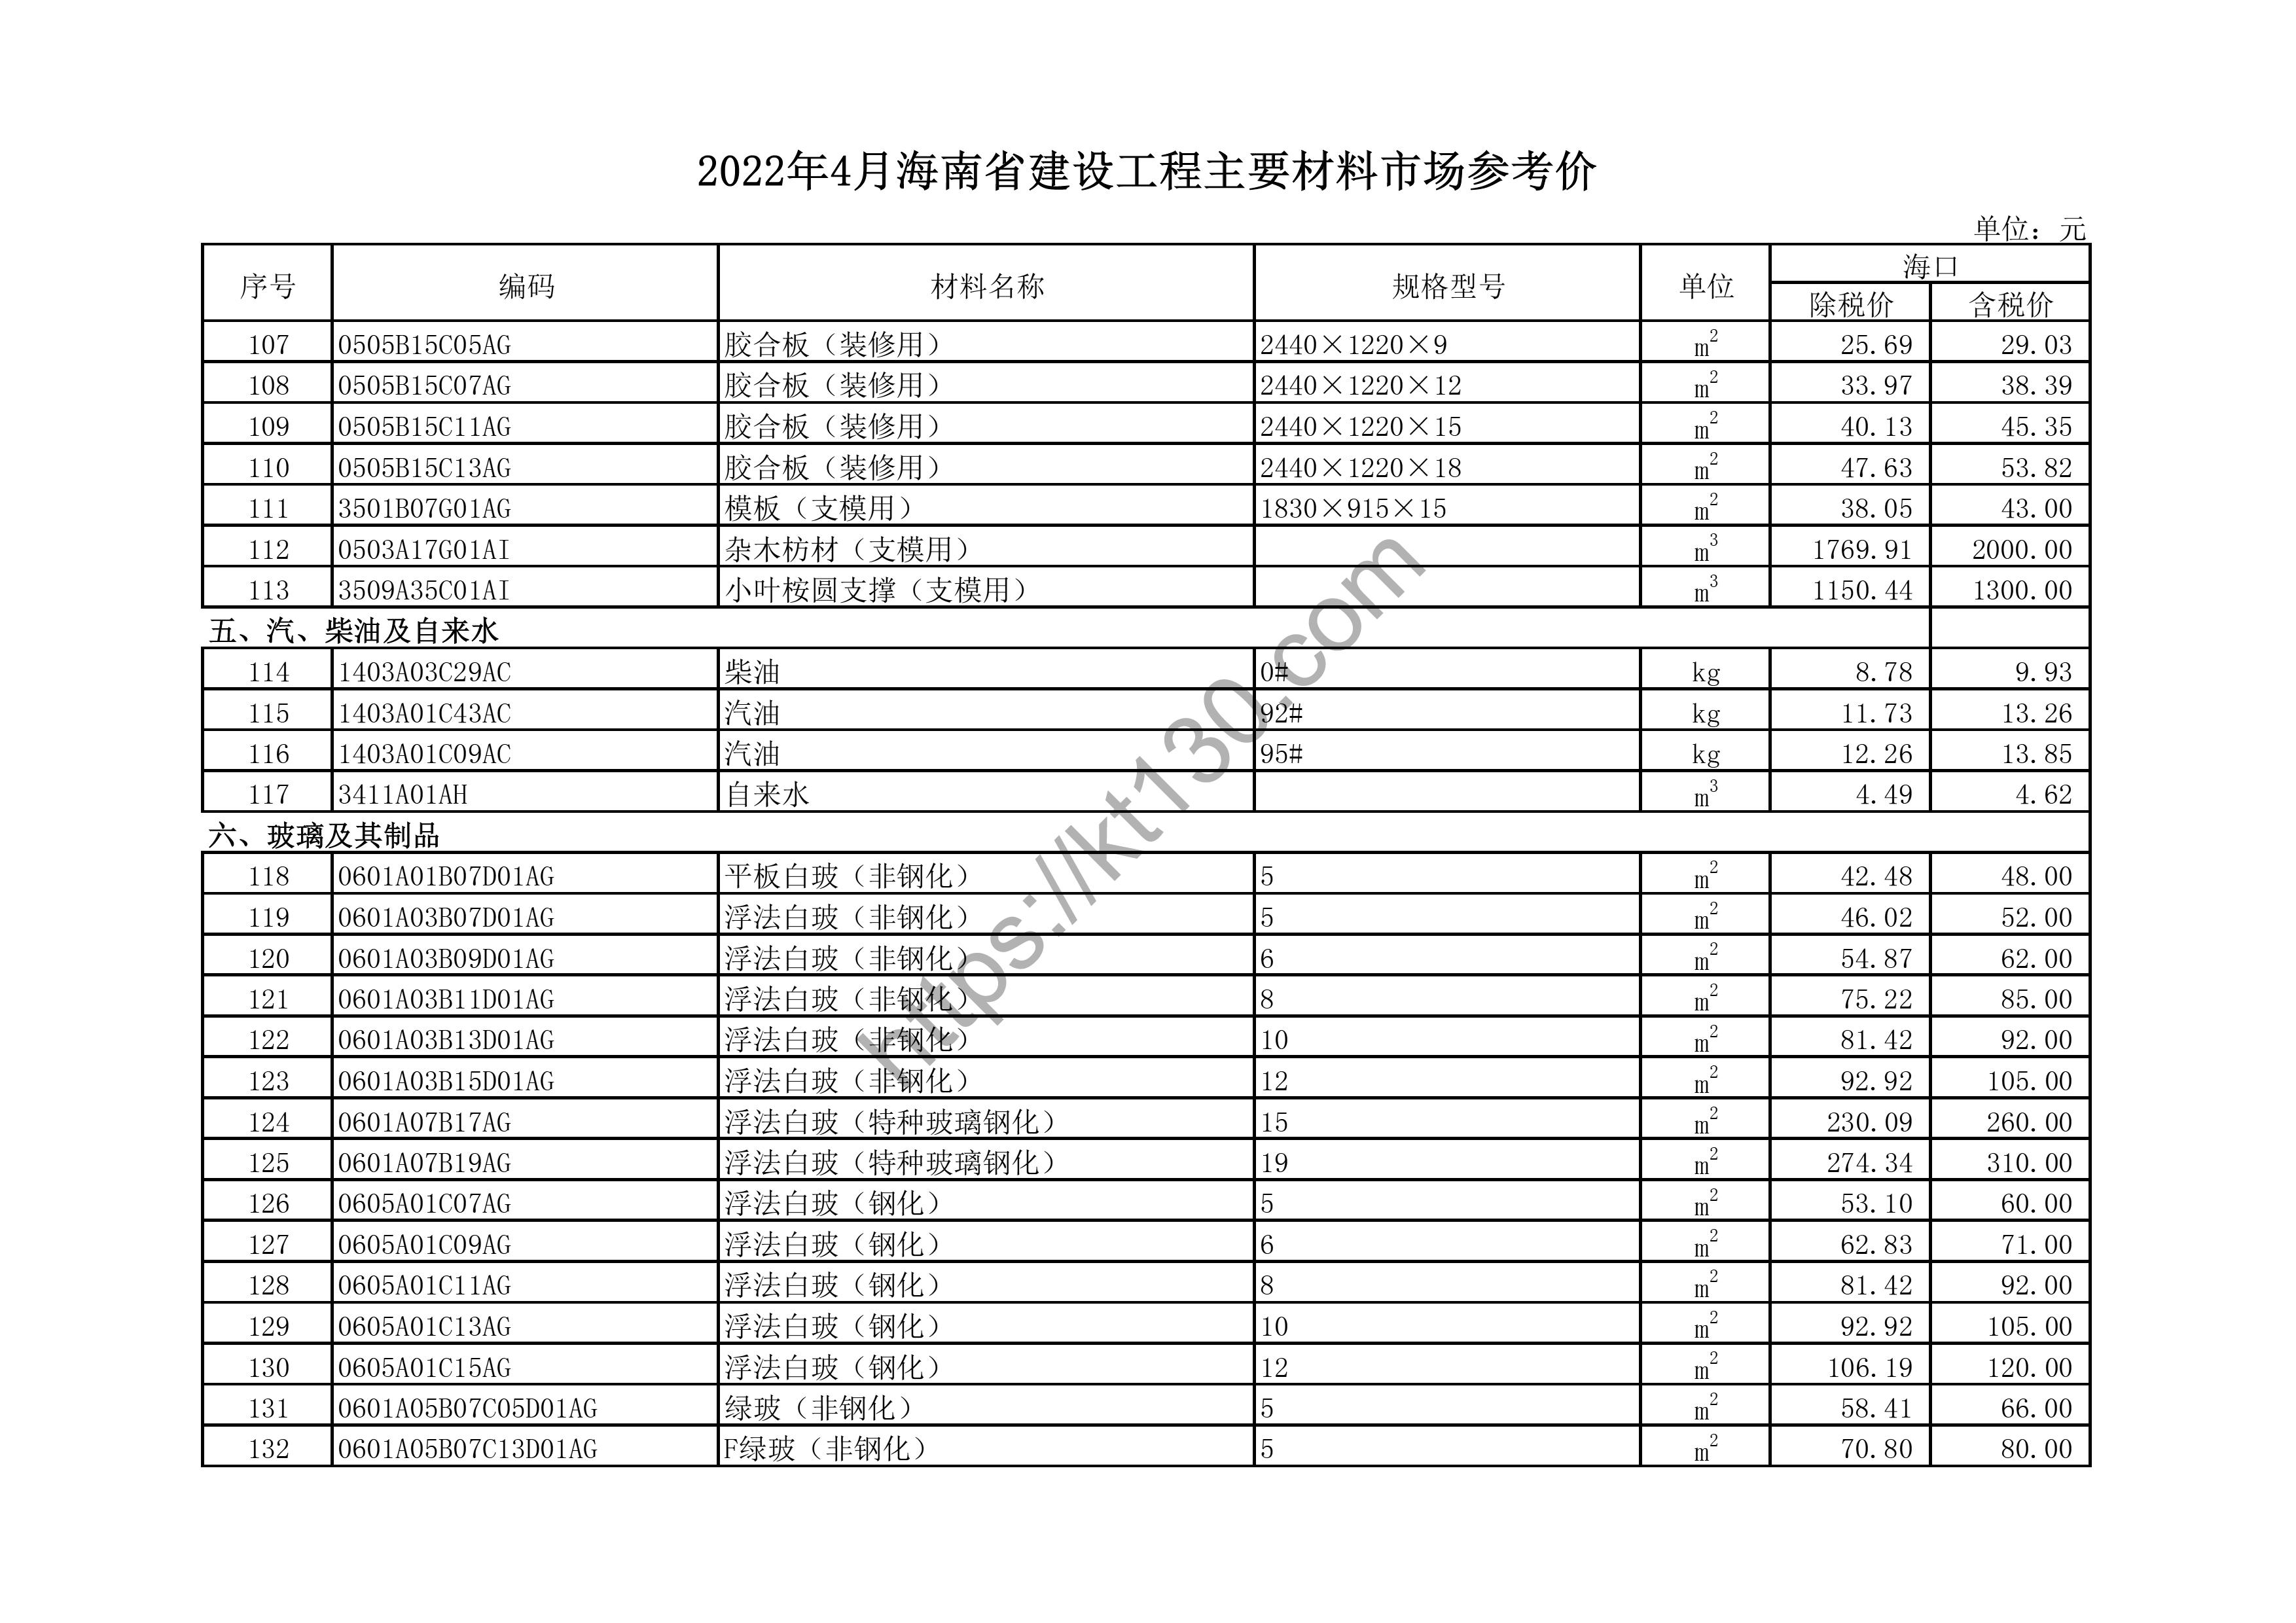 海南省2022年4月建筑材料价_玻璃及玻璃制品_44107